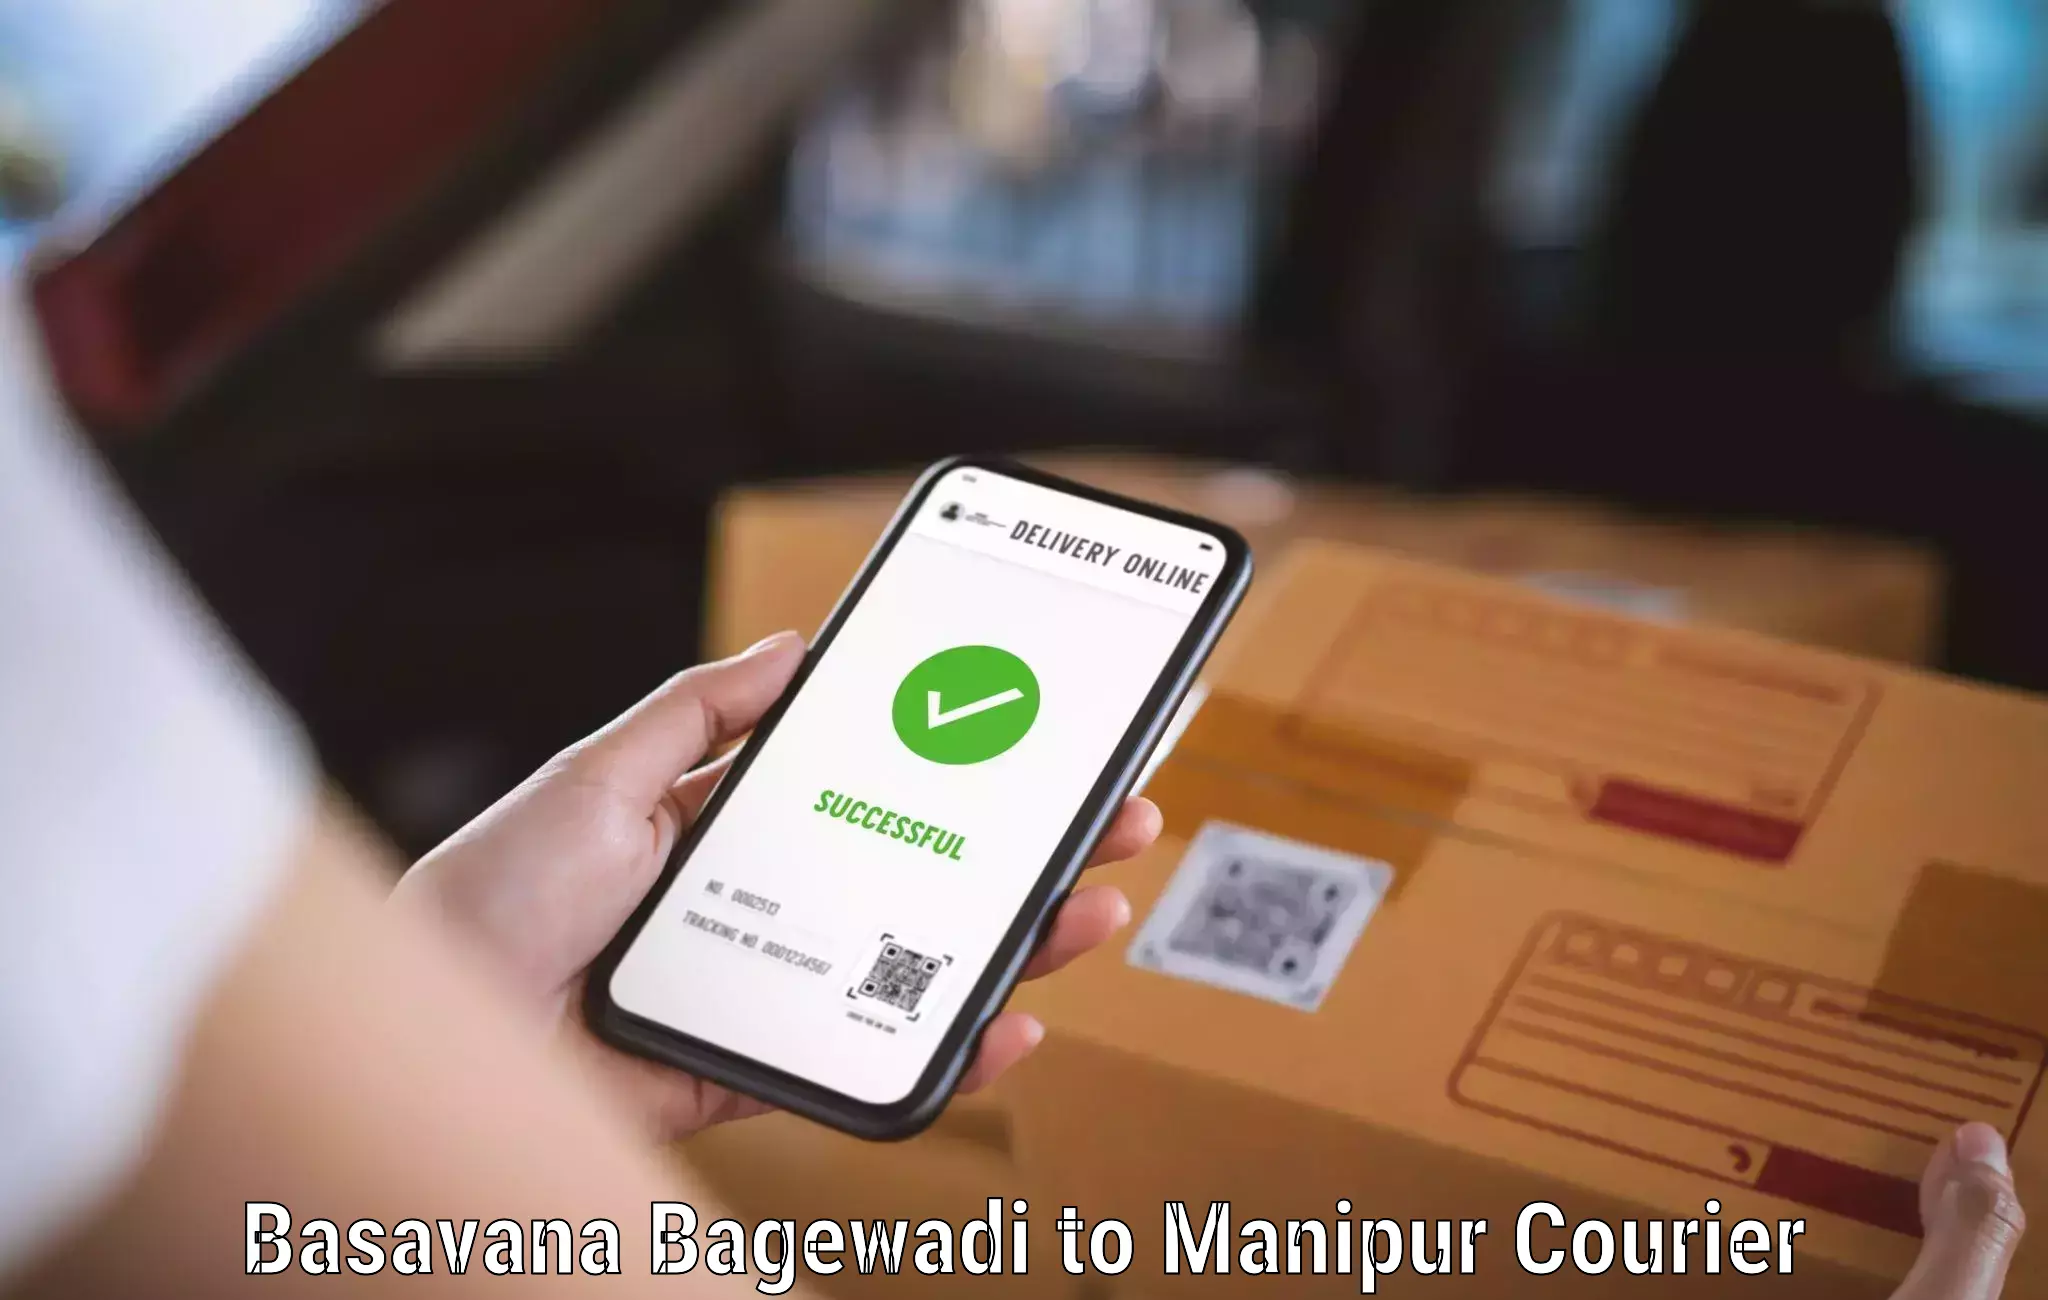 Bulk shipment Basavana Bagewadi to Churachandpur